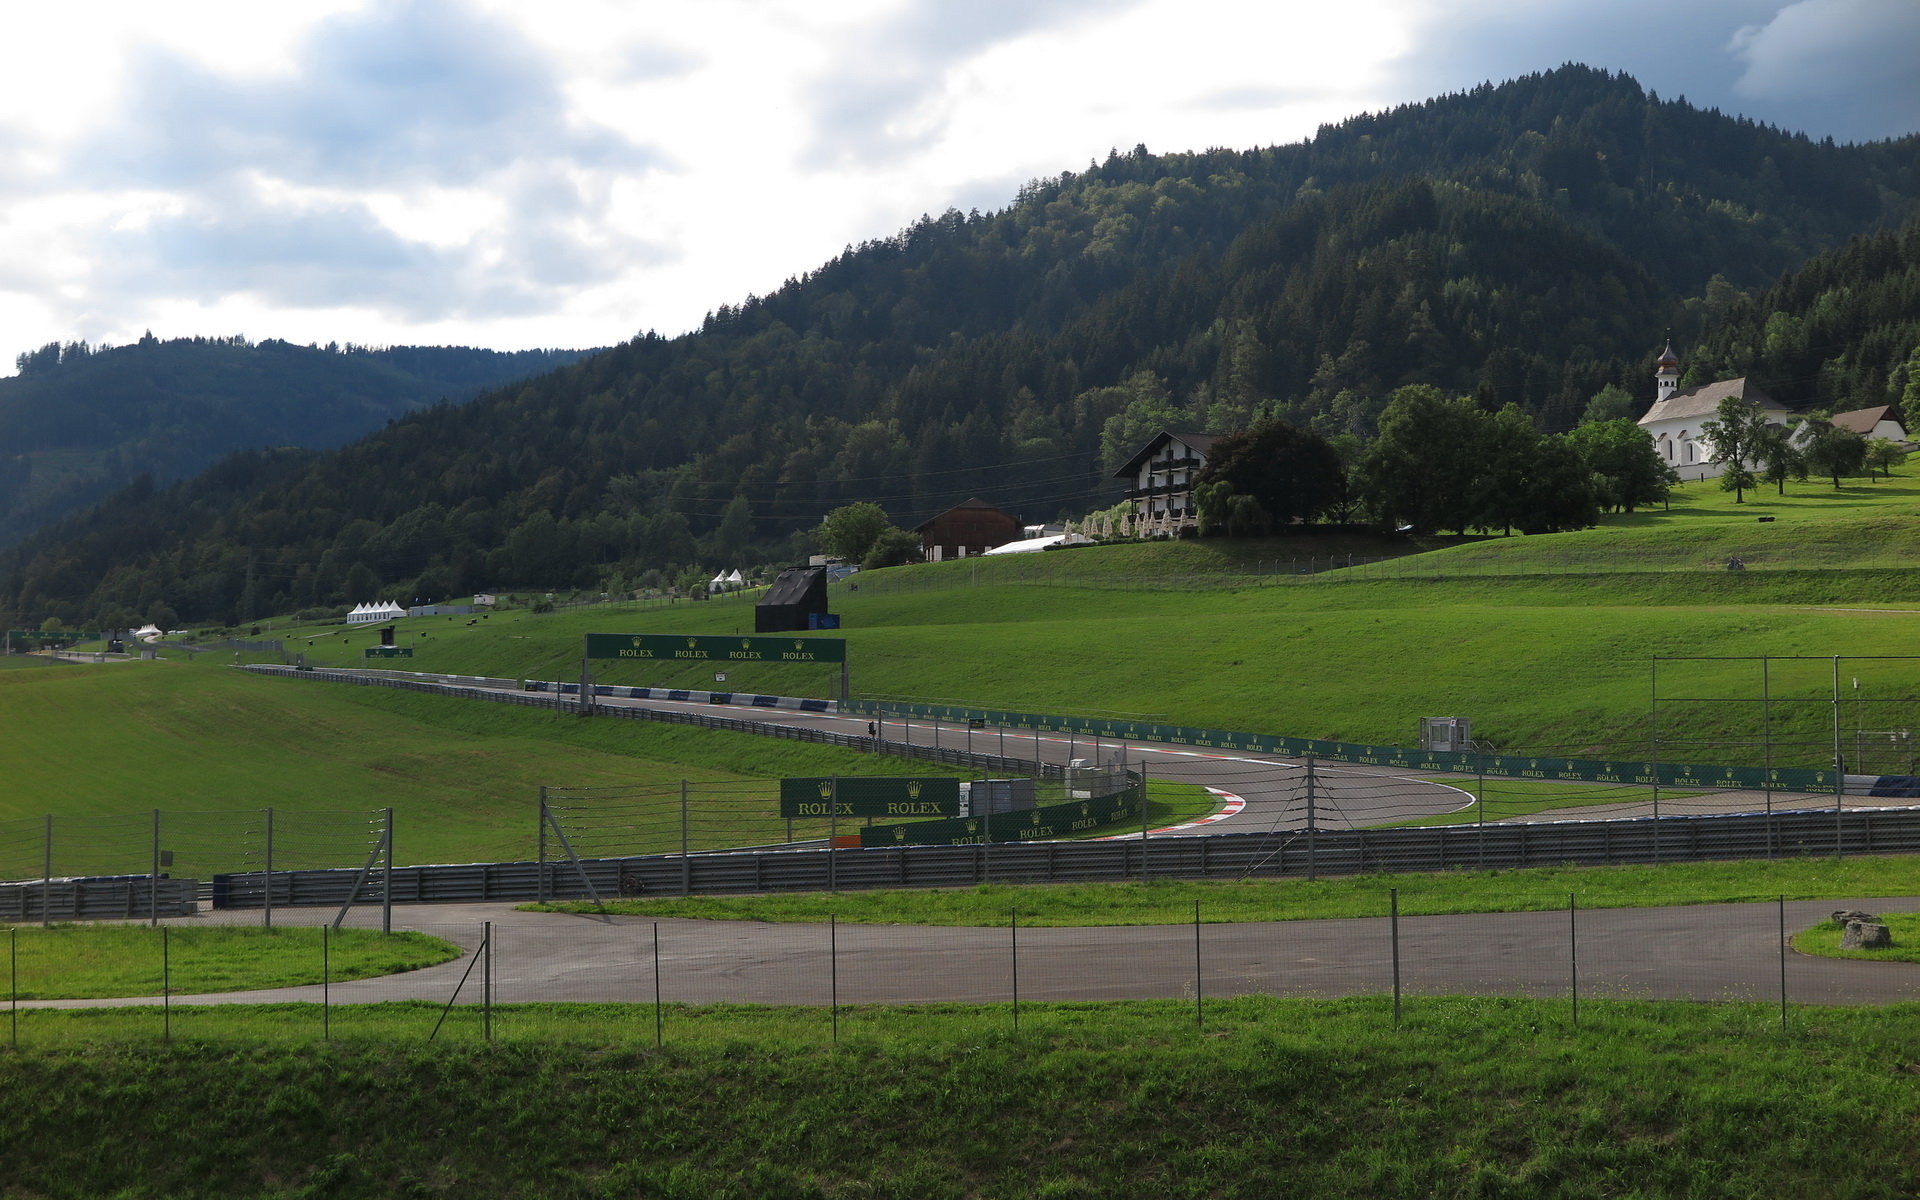 Středeční přípravy na okruhu Red Bull Ring v Rakousku